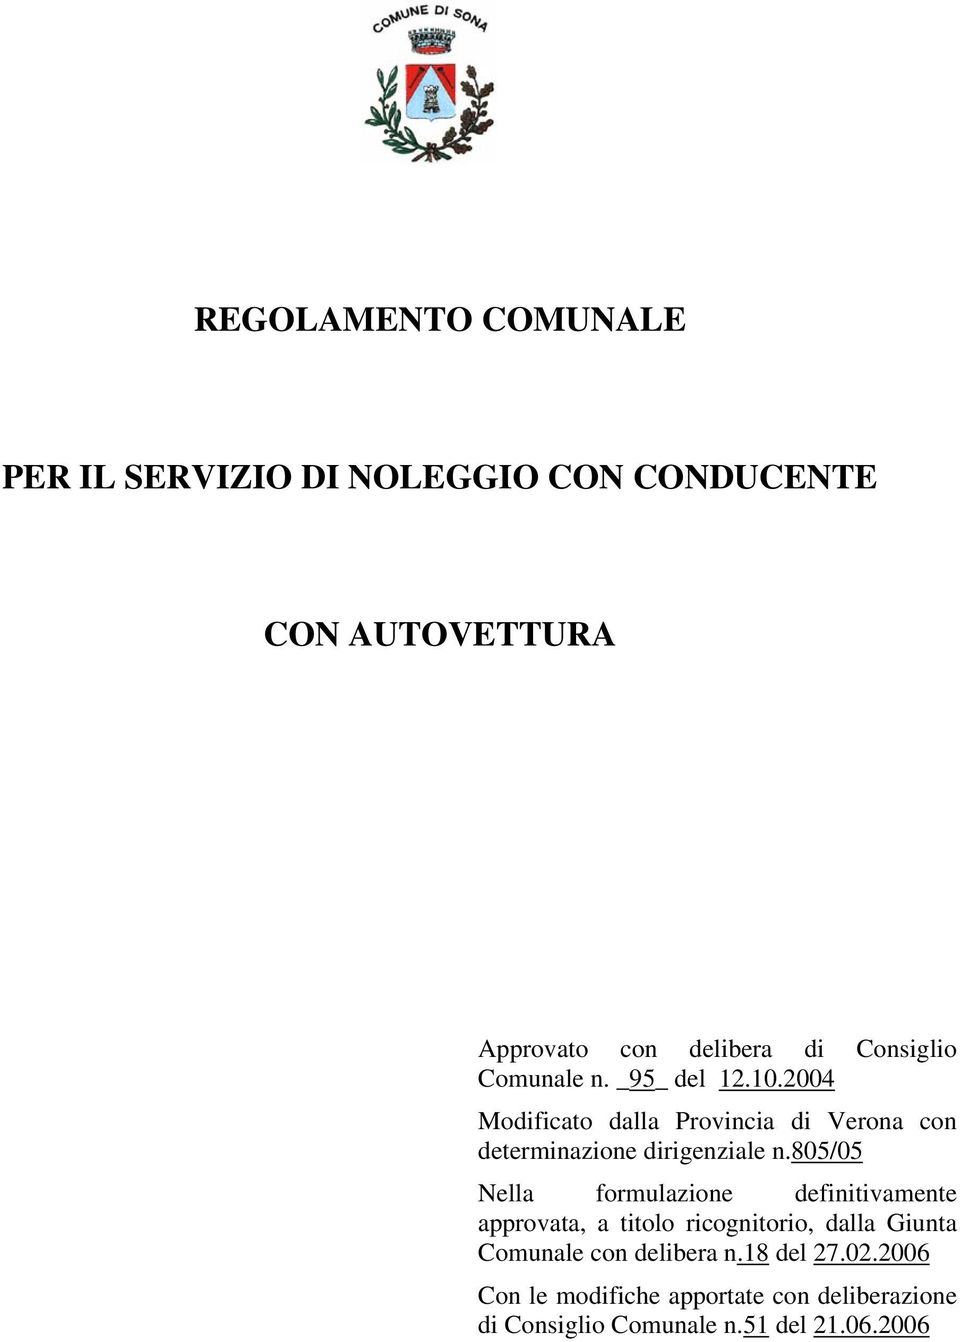 2004 Modificato dalla Provincia di Verona con determinazione dirigenziale n.